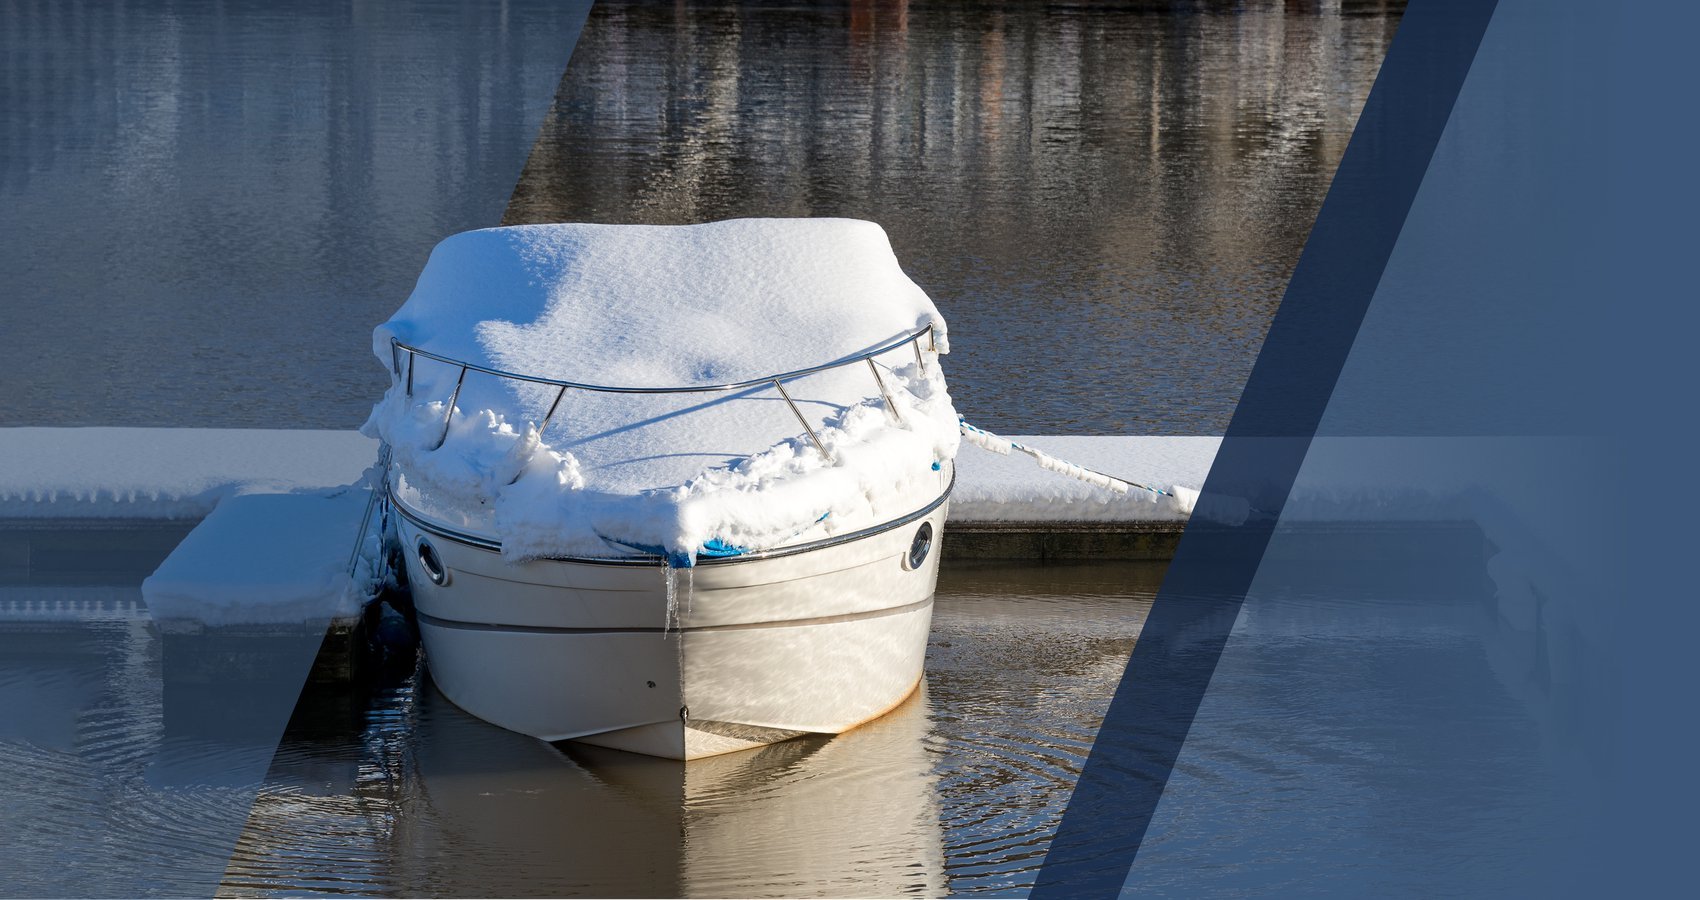 Winter Boat Storage Myths Debunked